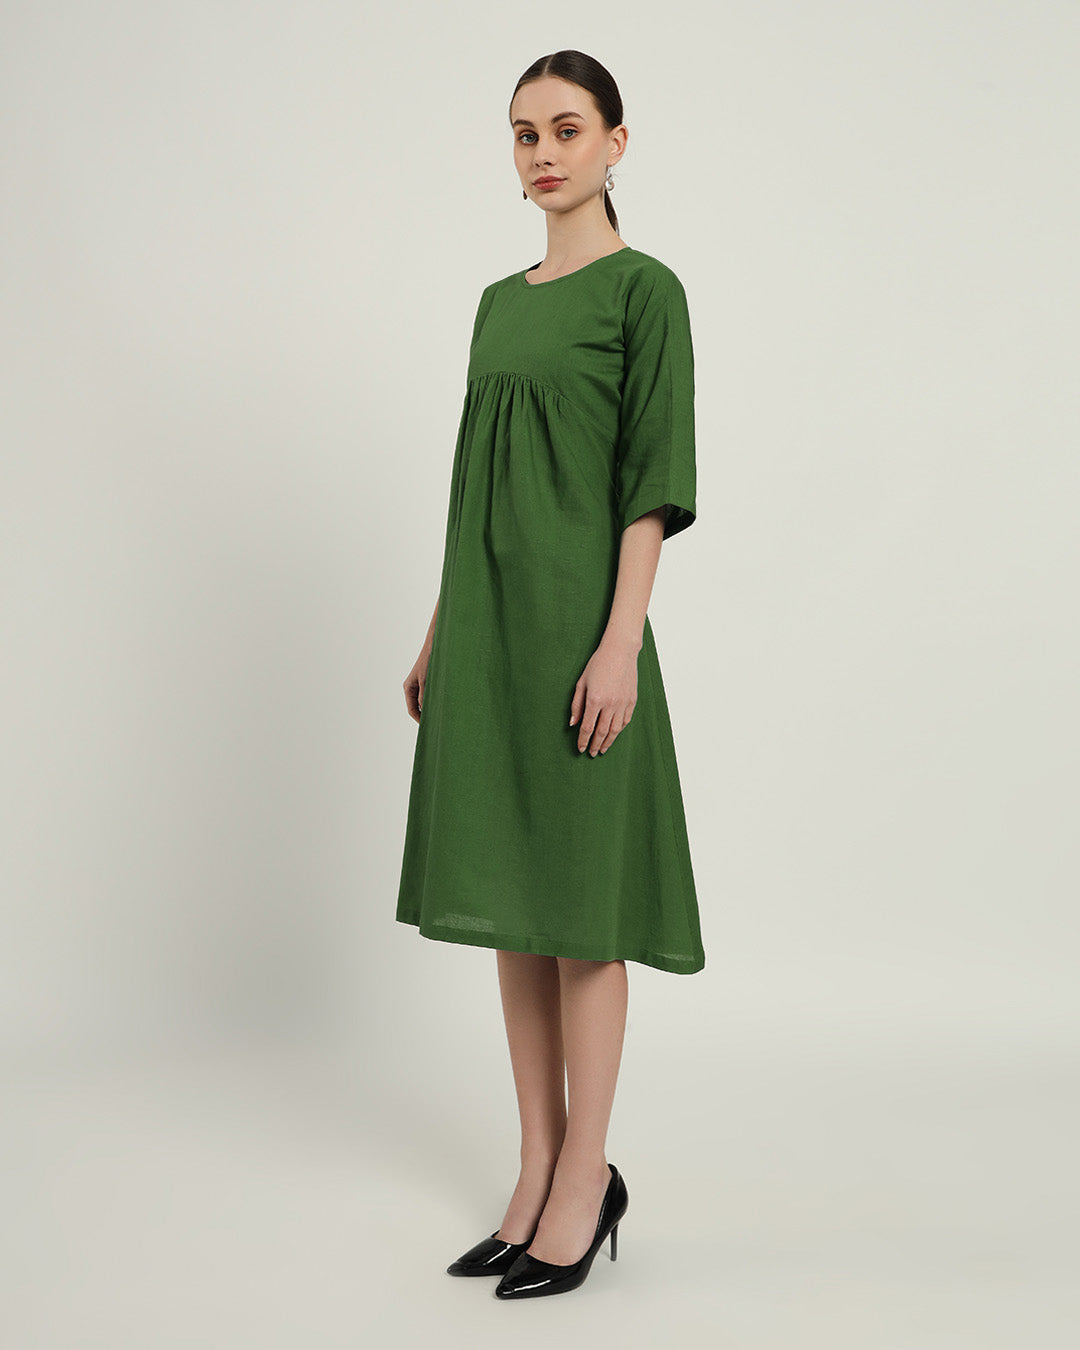 The Monrovia Emerald Dress